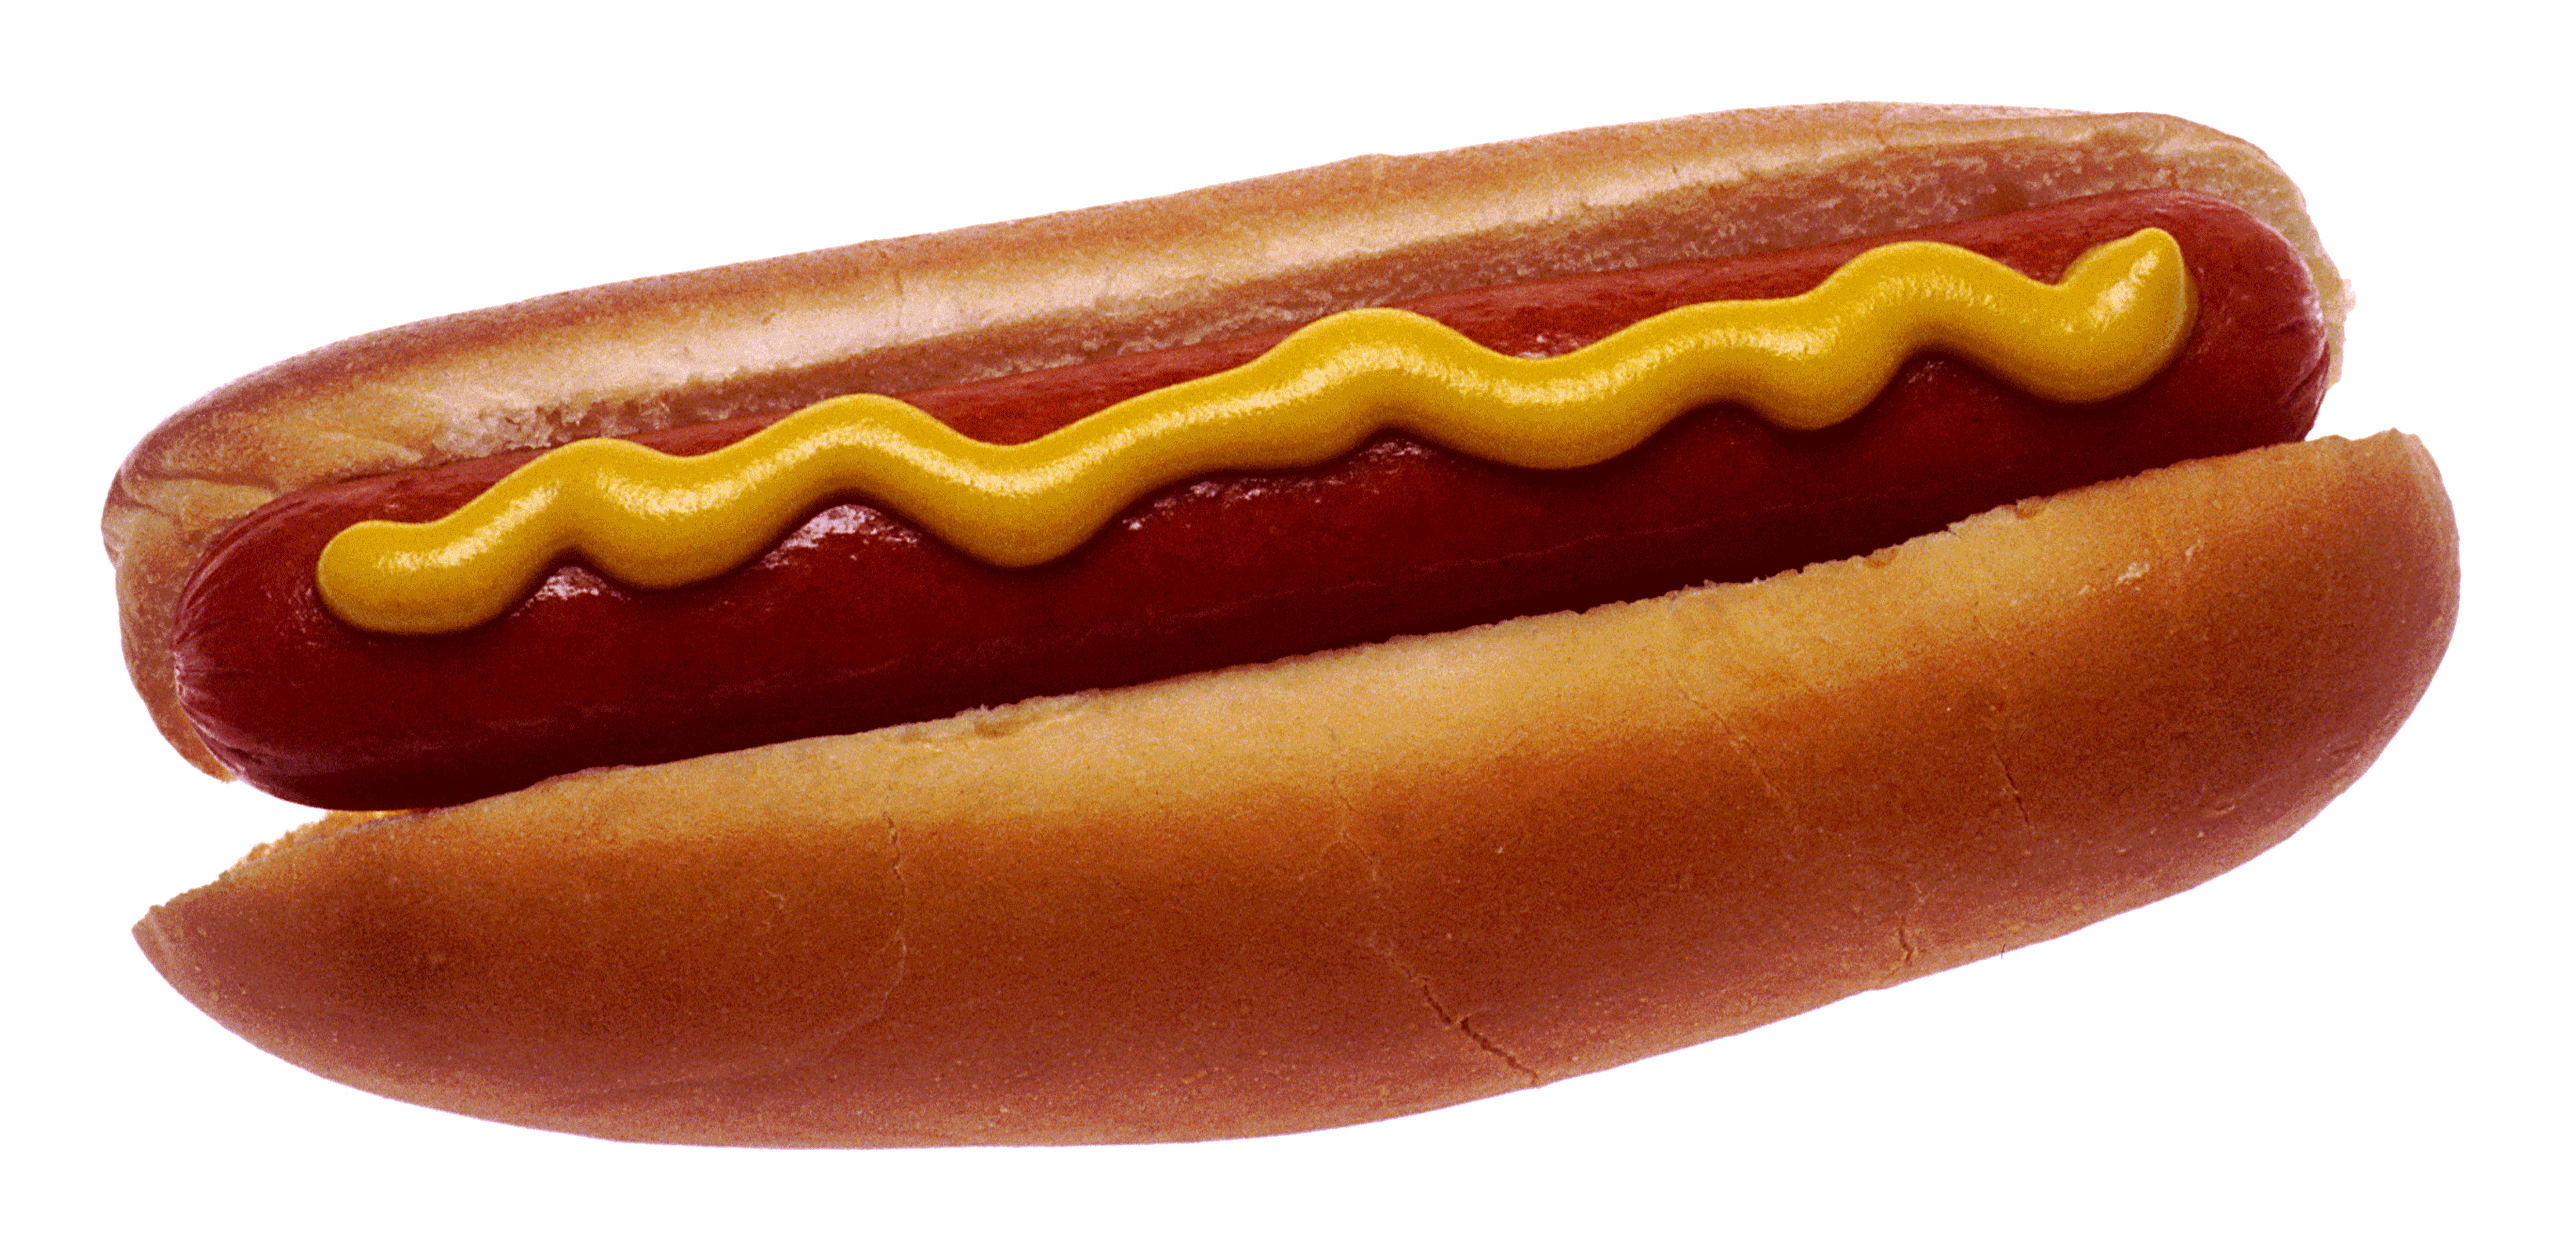 Hot Dog Picture - KibrisPDR